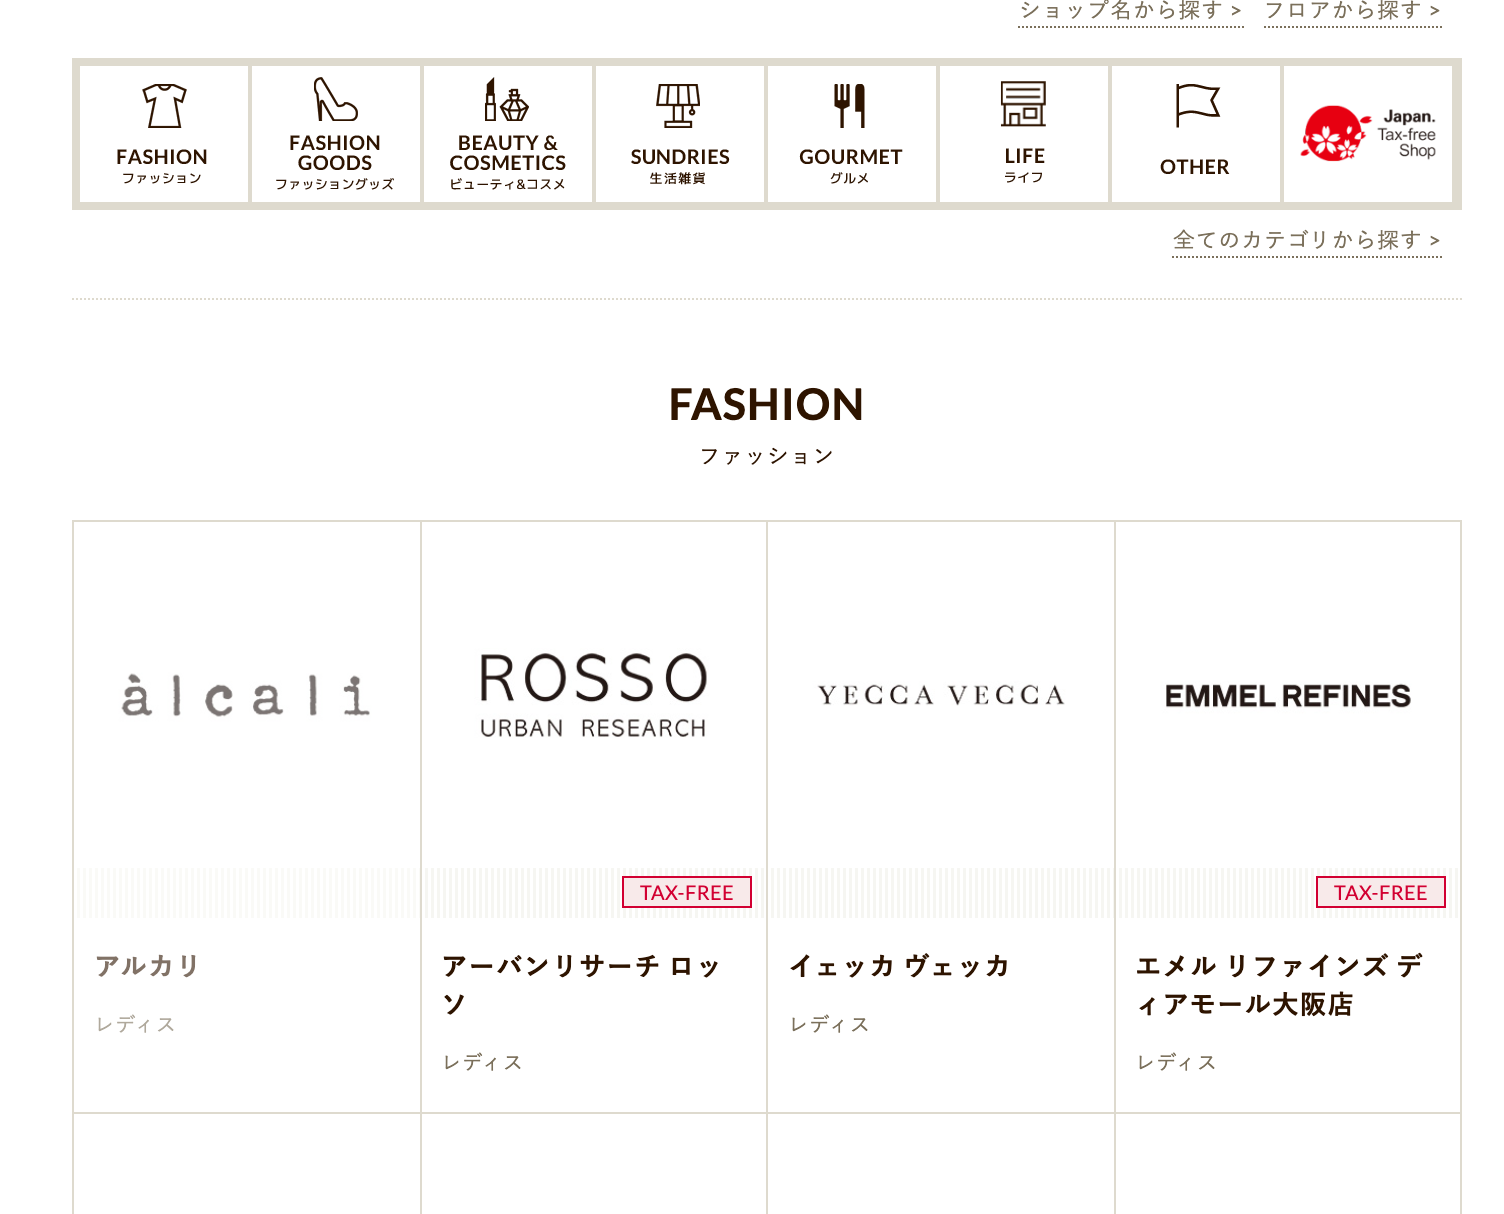 ブランド名がカテゴリ分類されているディアモール大阪の例